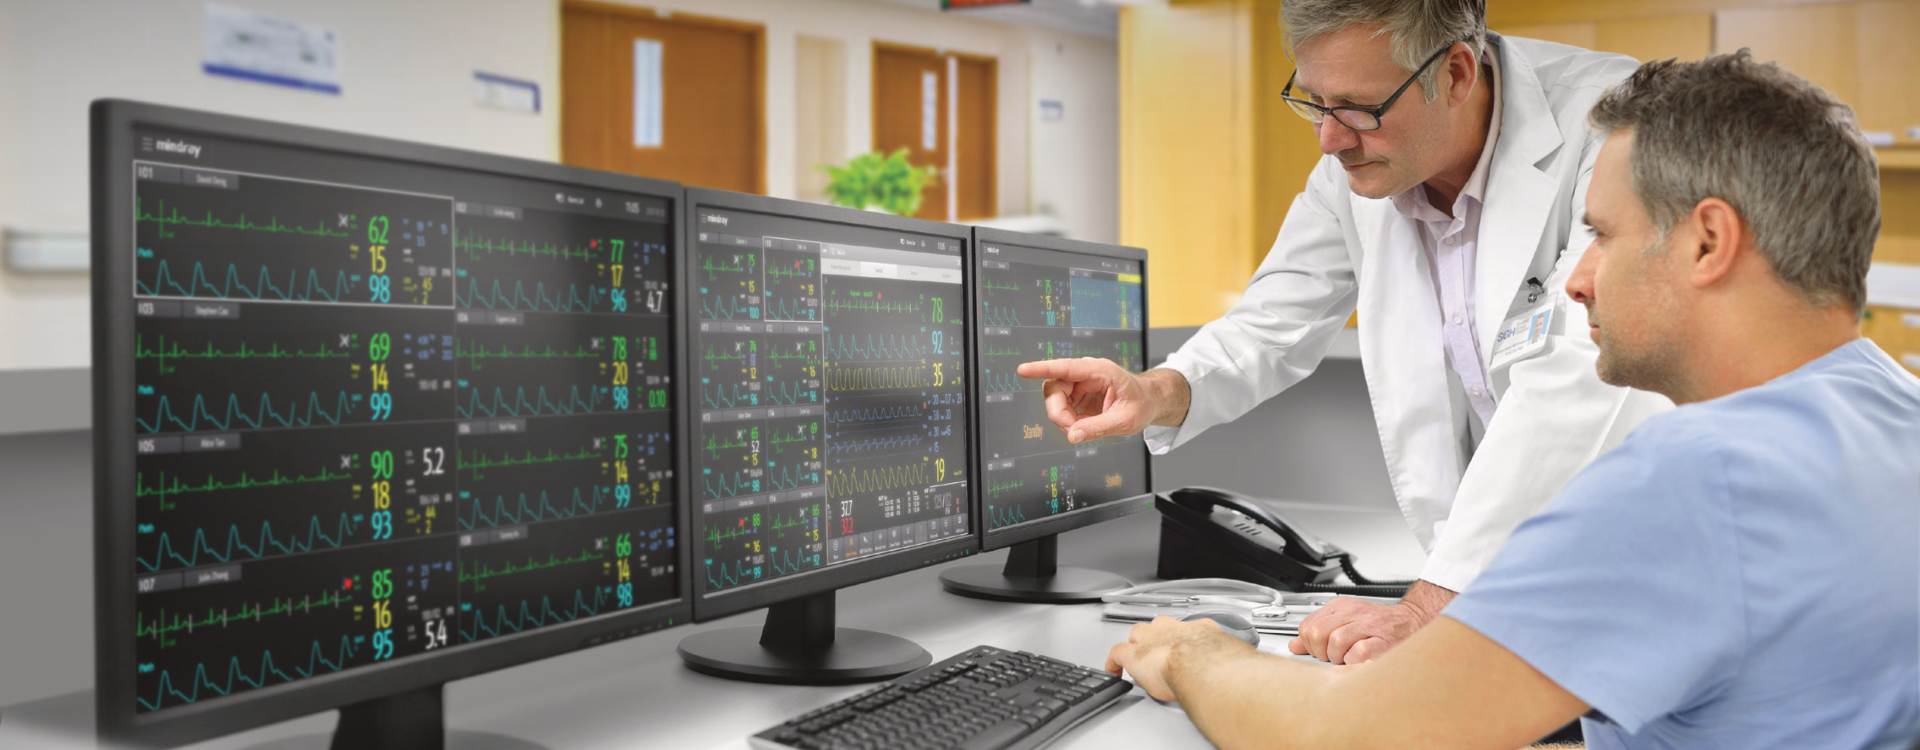 เครื่องติดตามการทำงานของหัวใจไร้สายแบบรวมศูนย์ไม่น้อยกว่า 8 ยูนิต  Central Monitoring System BeneVision™ CMS  Mindray